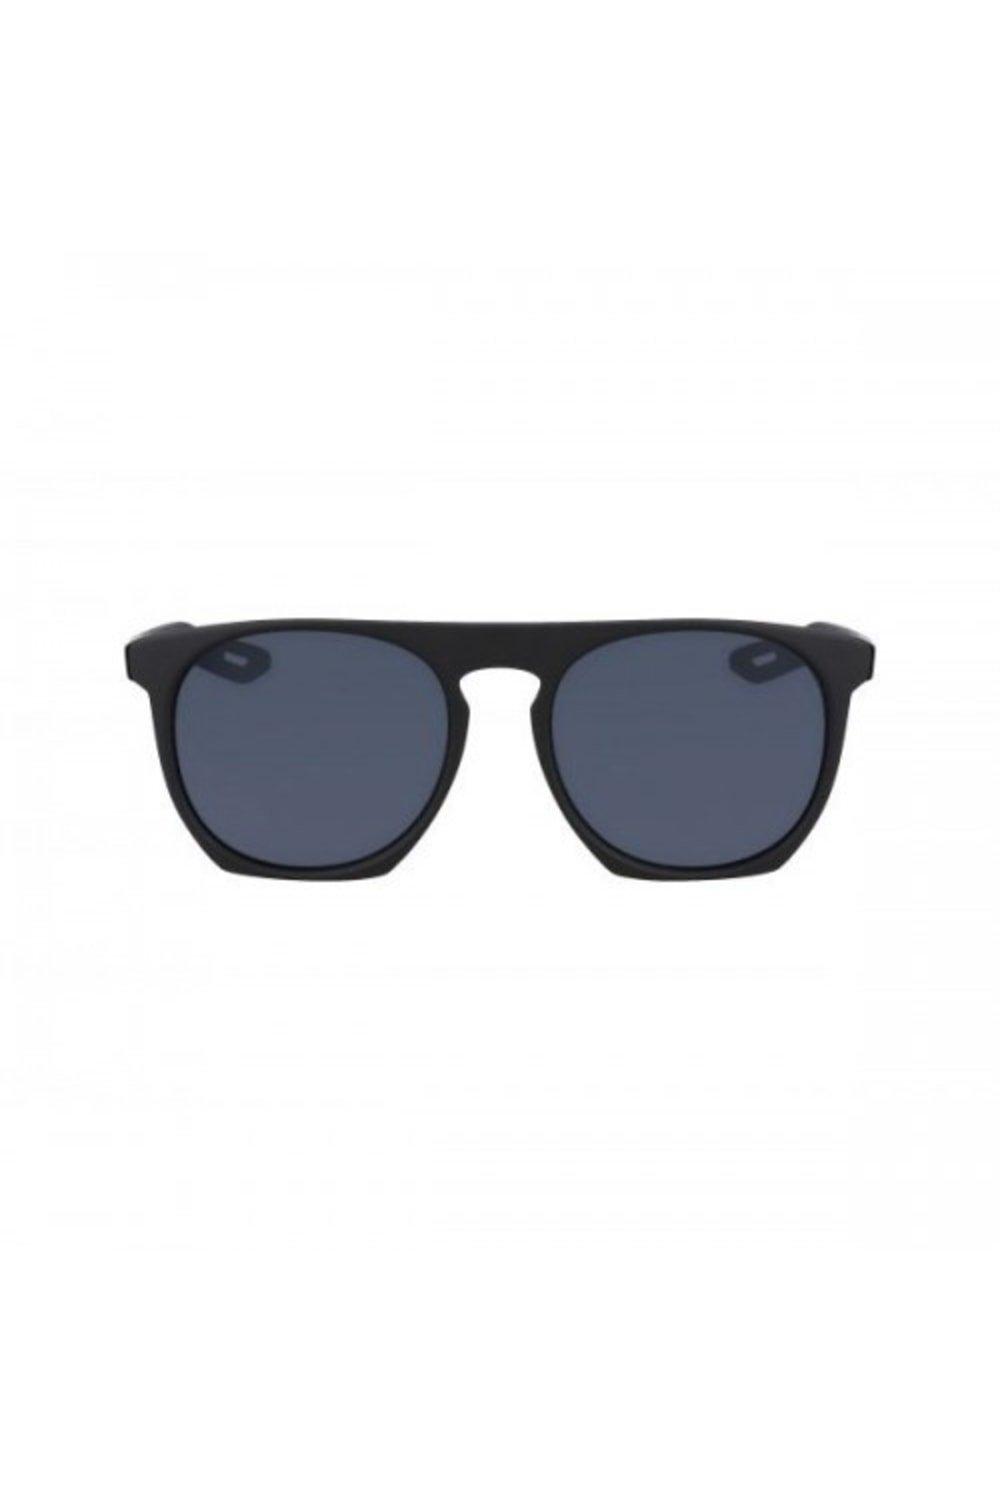 Flatspot XXII Matte Sunglasses